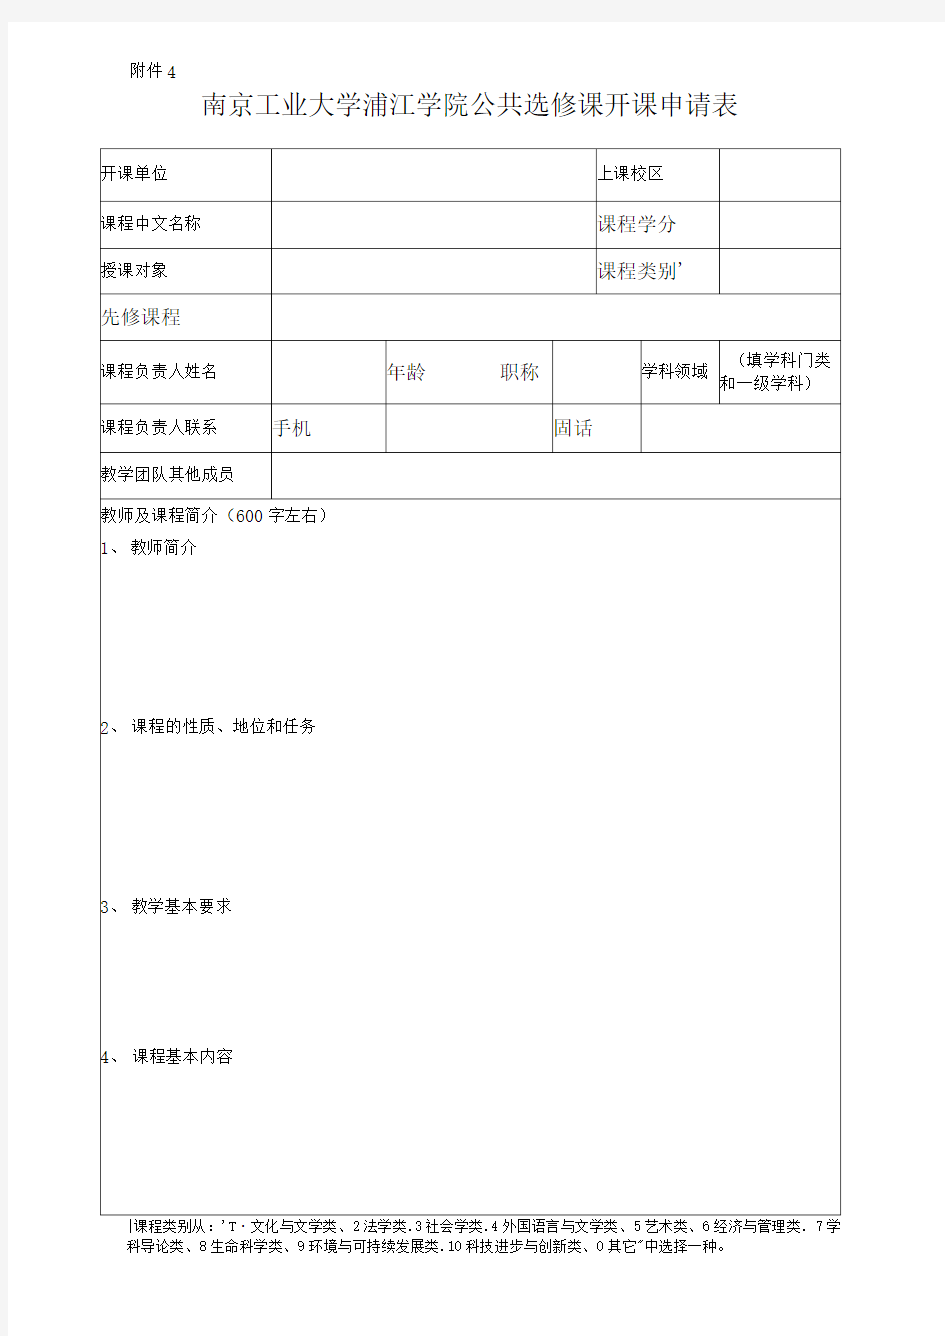 南京工业大学浦江学院公共选修课开课申请表